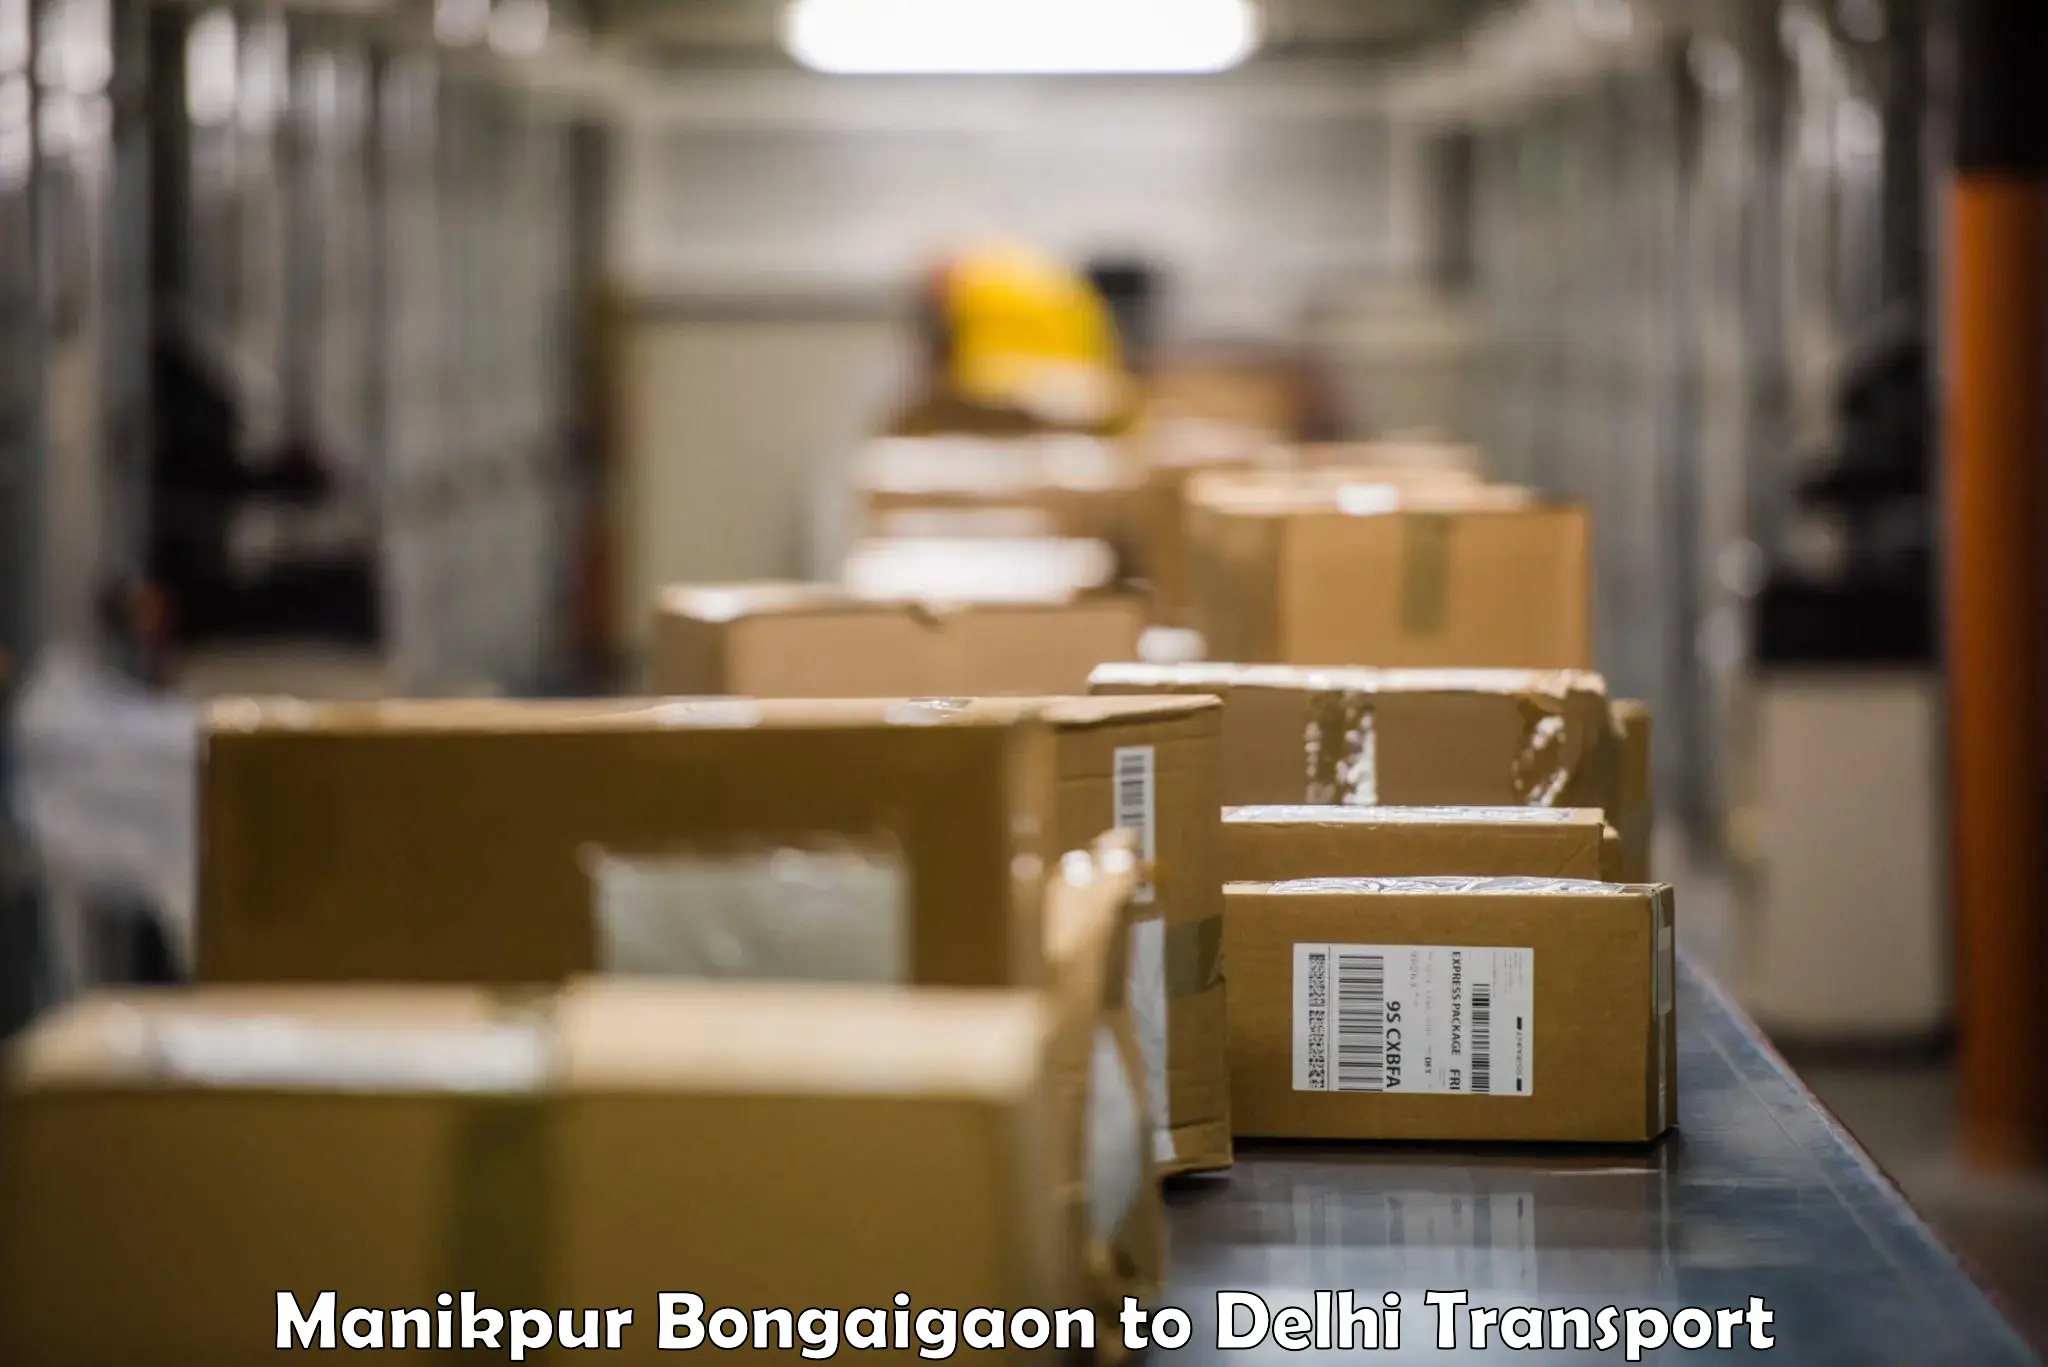 Furniture transport service in Manikpur Bongaigaon to Krishna Nagar